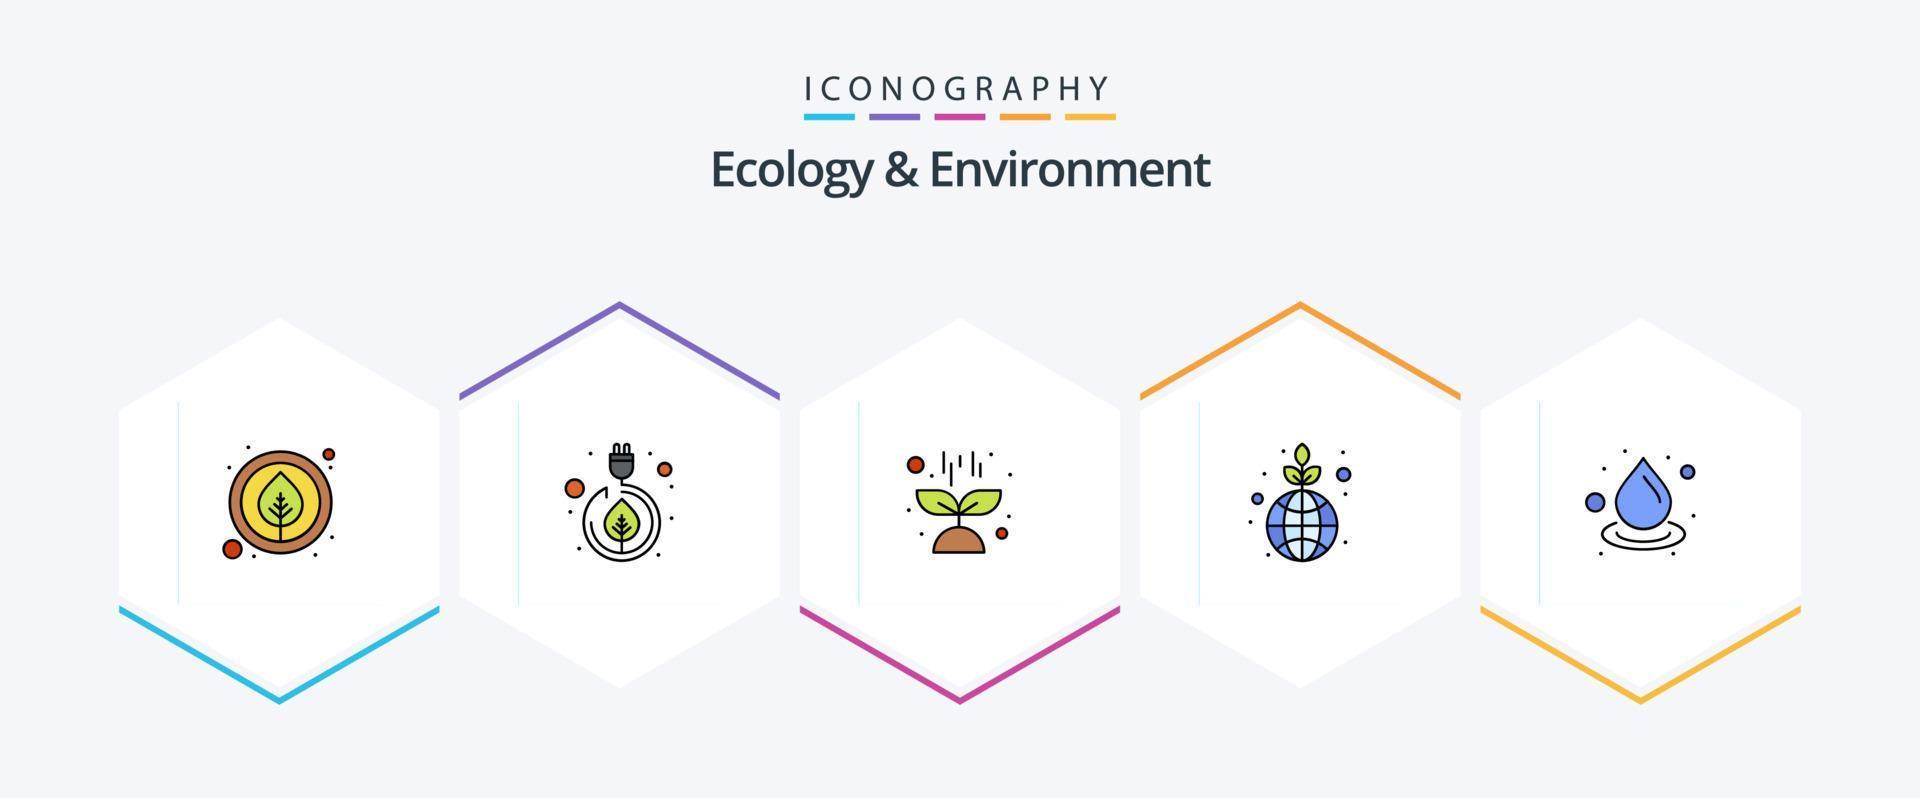 Ökologie und Umwelt 25 gefüllte Symbolpakete einschließlich Ökologie. speichern. Natur. Planet. grün vektor